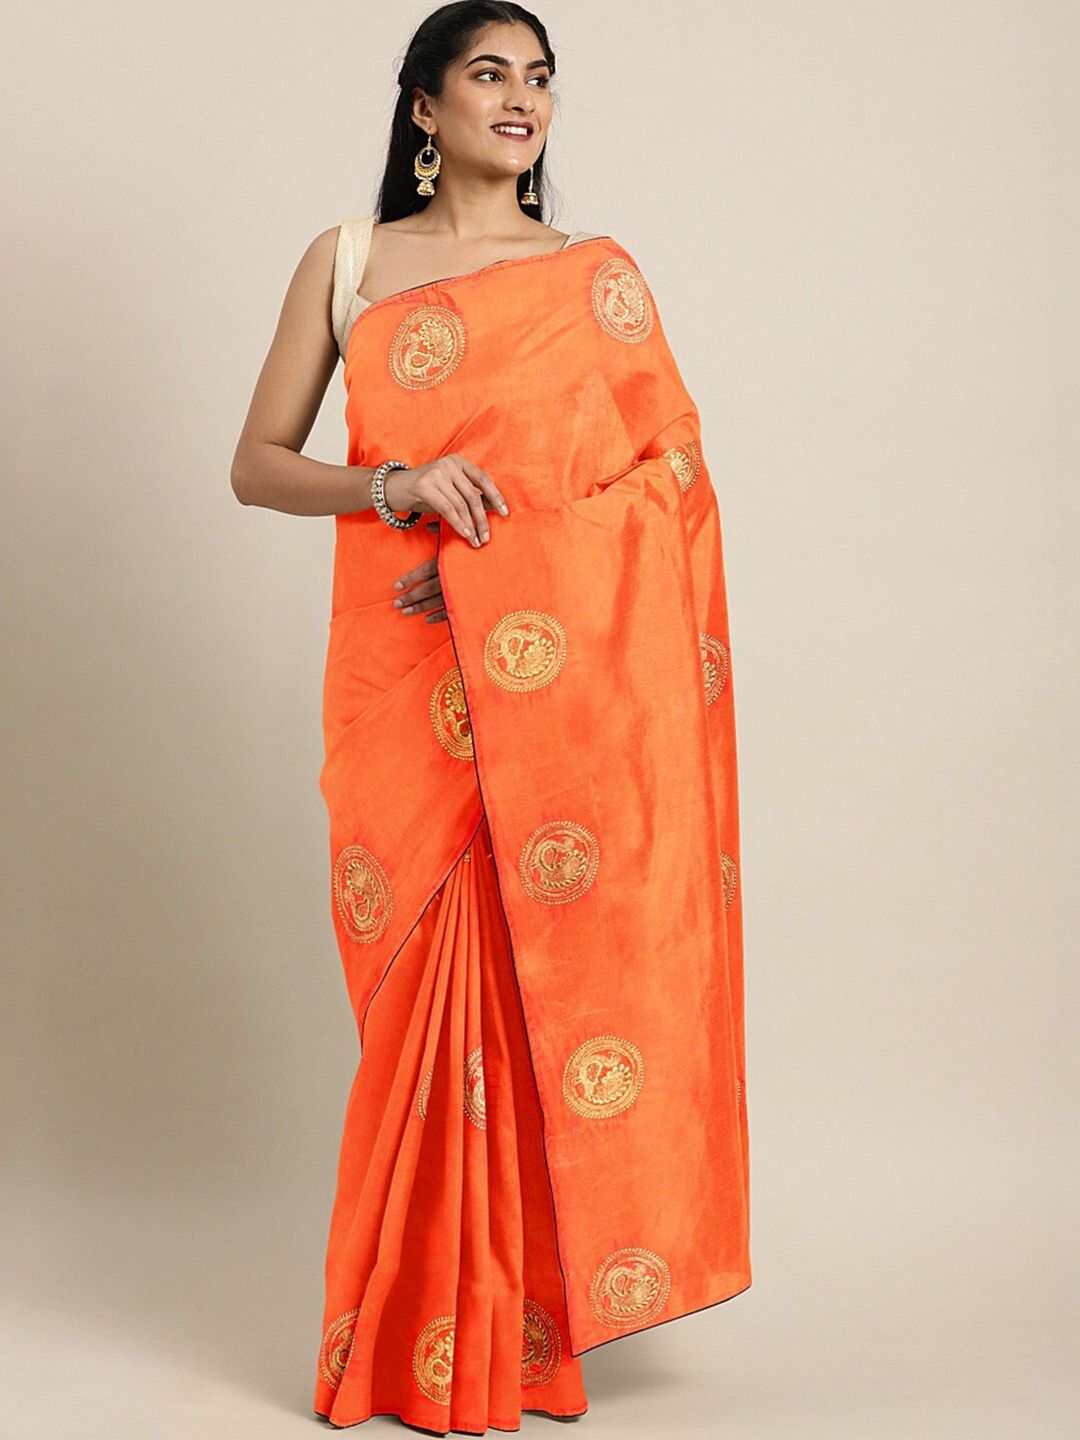 MAHALASA Orange Saree Price in India